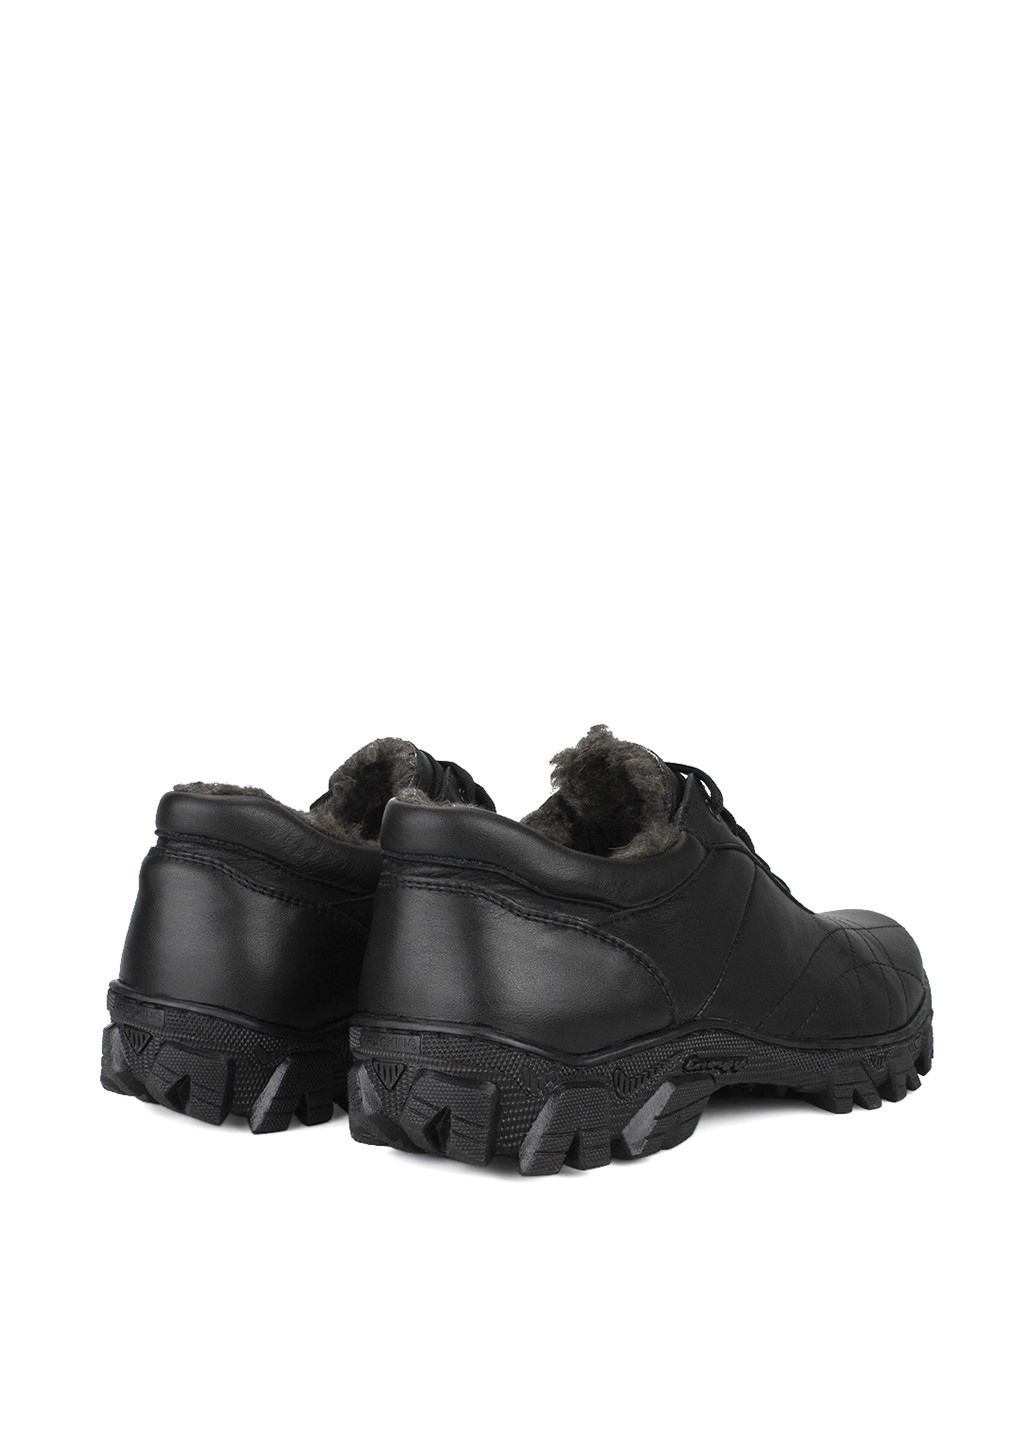 Черные зимние кроссовки Libero